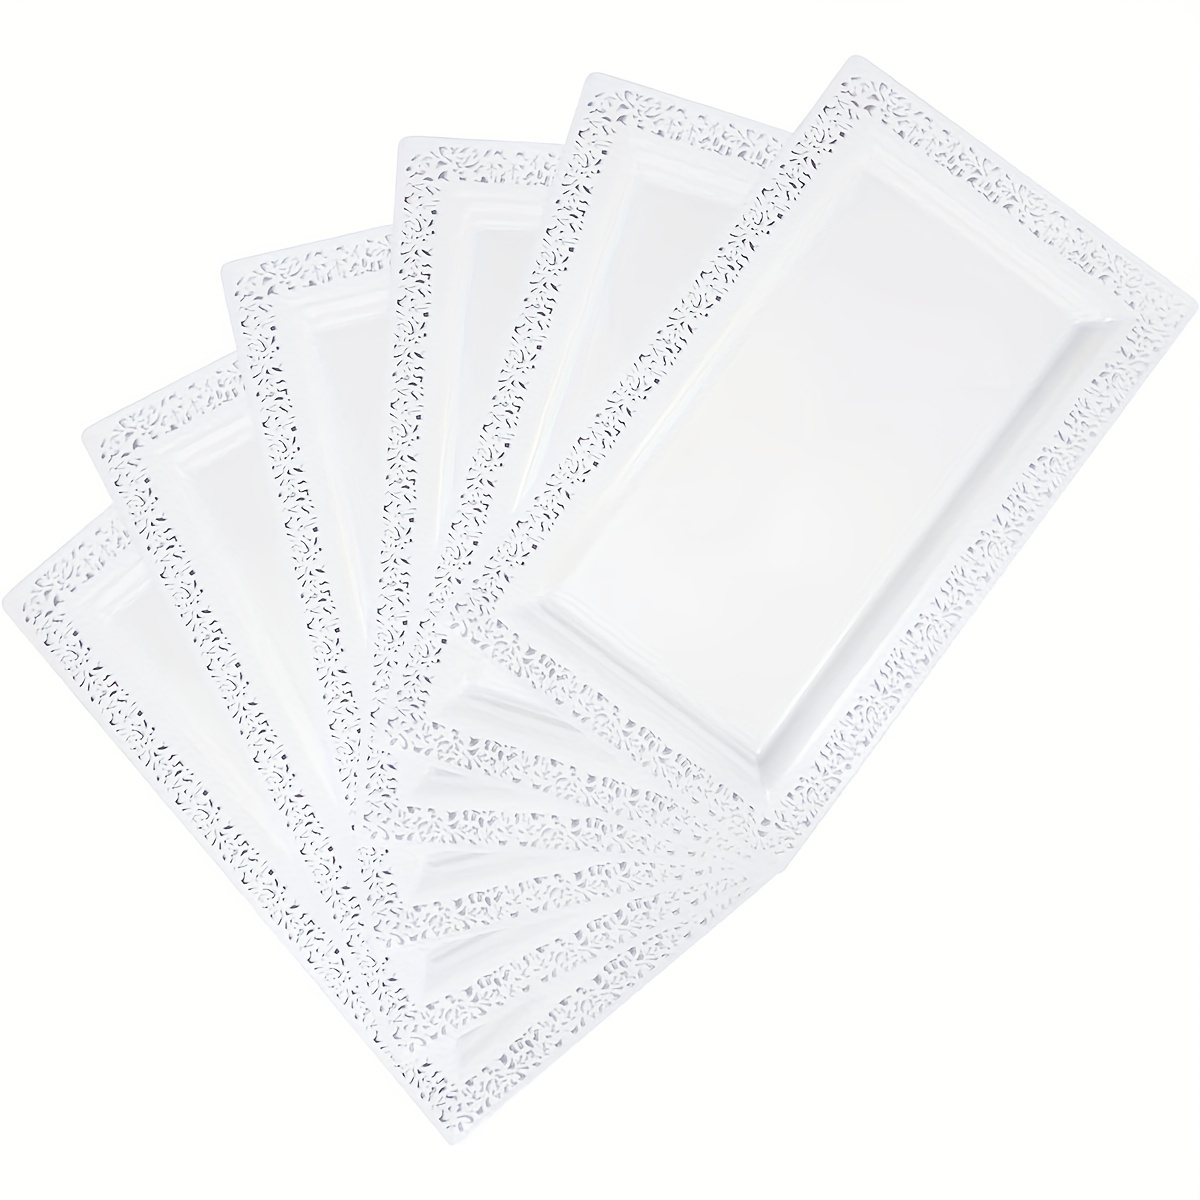 Bandejas de plástico para servir de 9 x 13 pulgadas, paquete de 4 bandejas  transparentes duraderas para fiestas, bandeja desechable para alimentos